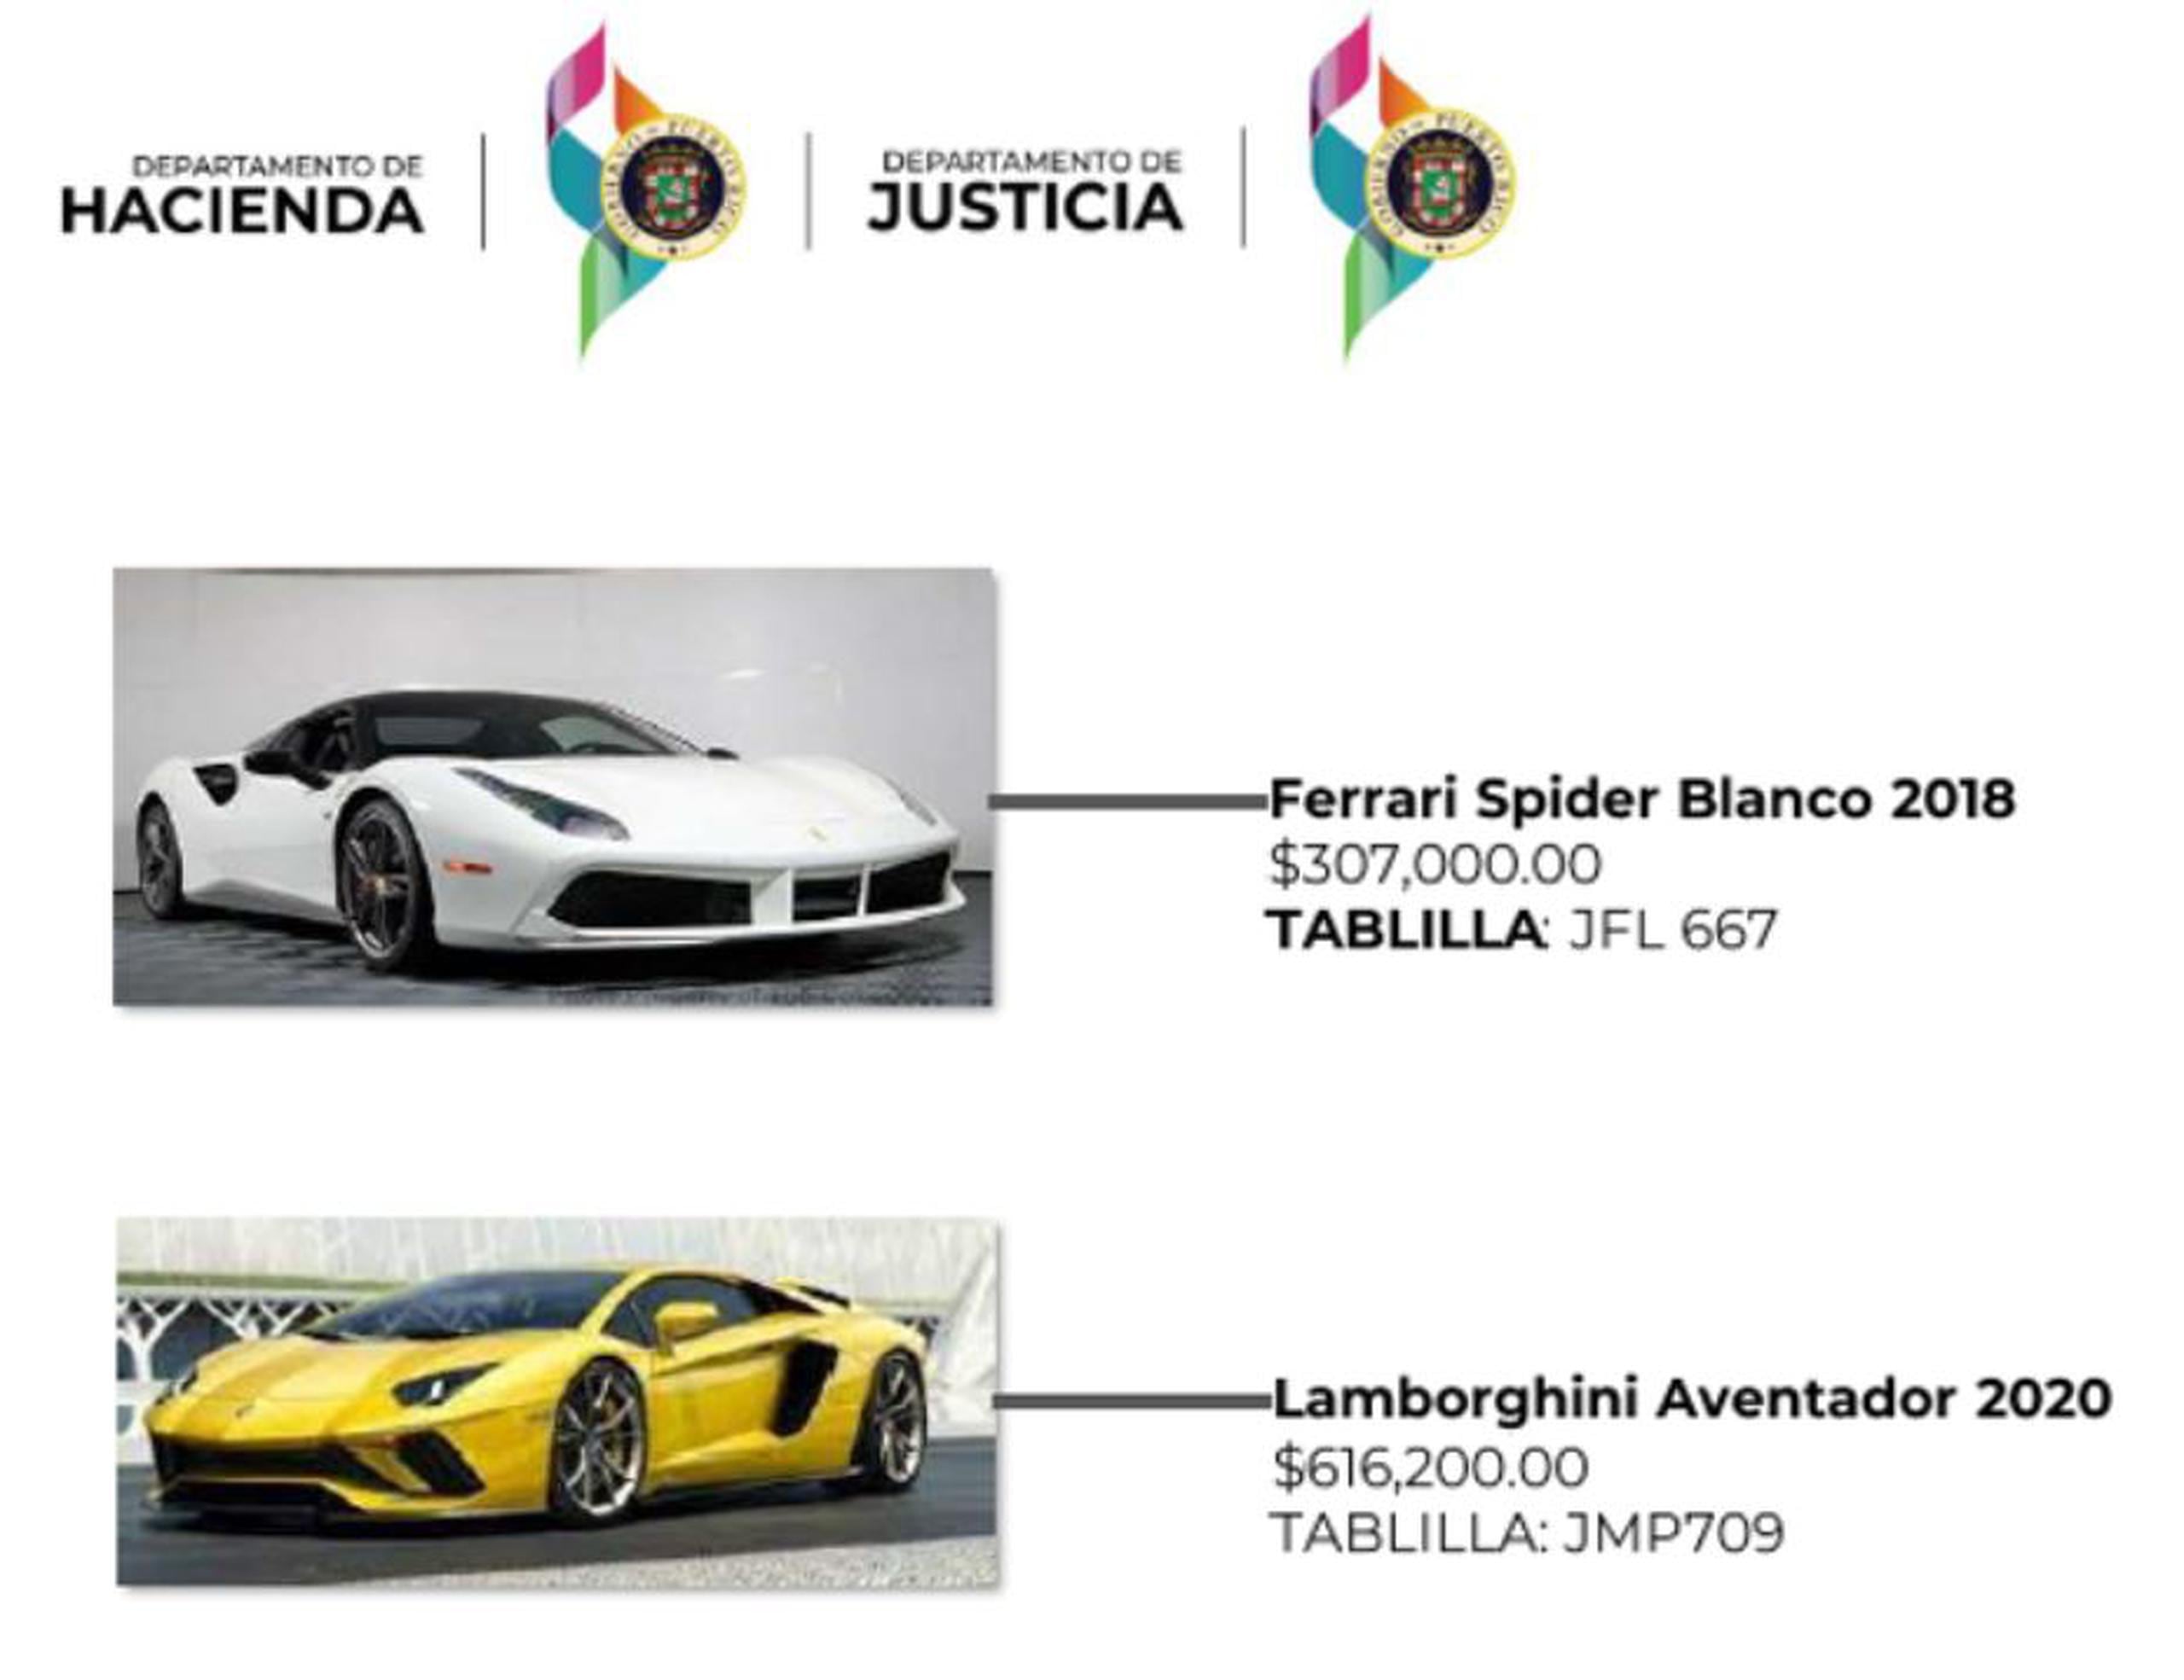 Imagen circulada por el Departamento de Hacienda y Justicia en las redes sociales con modelos de autos de lujo, similares a los que el empresario Luis Benítez mantiene escondidos.